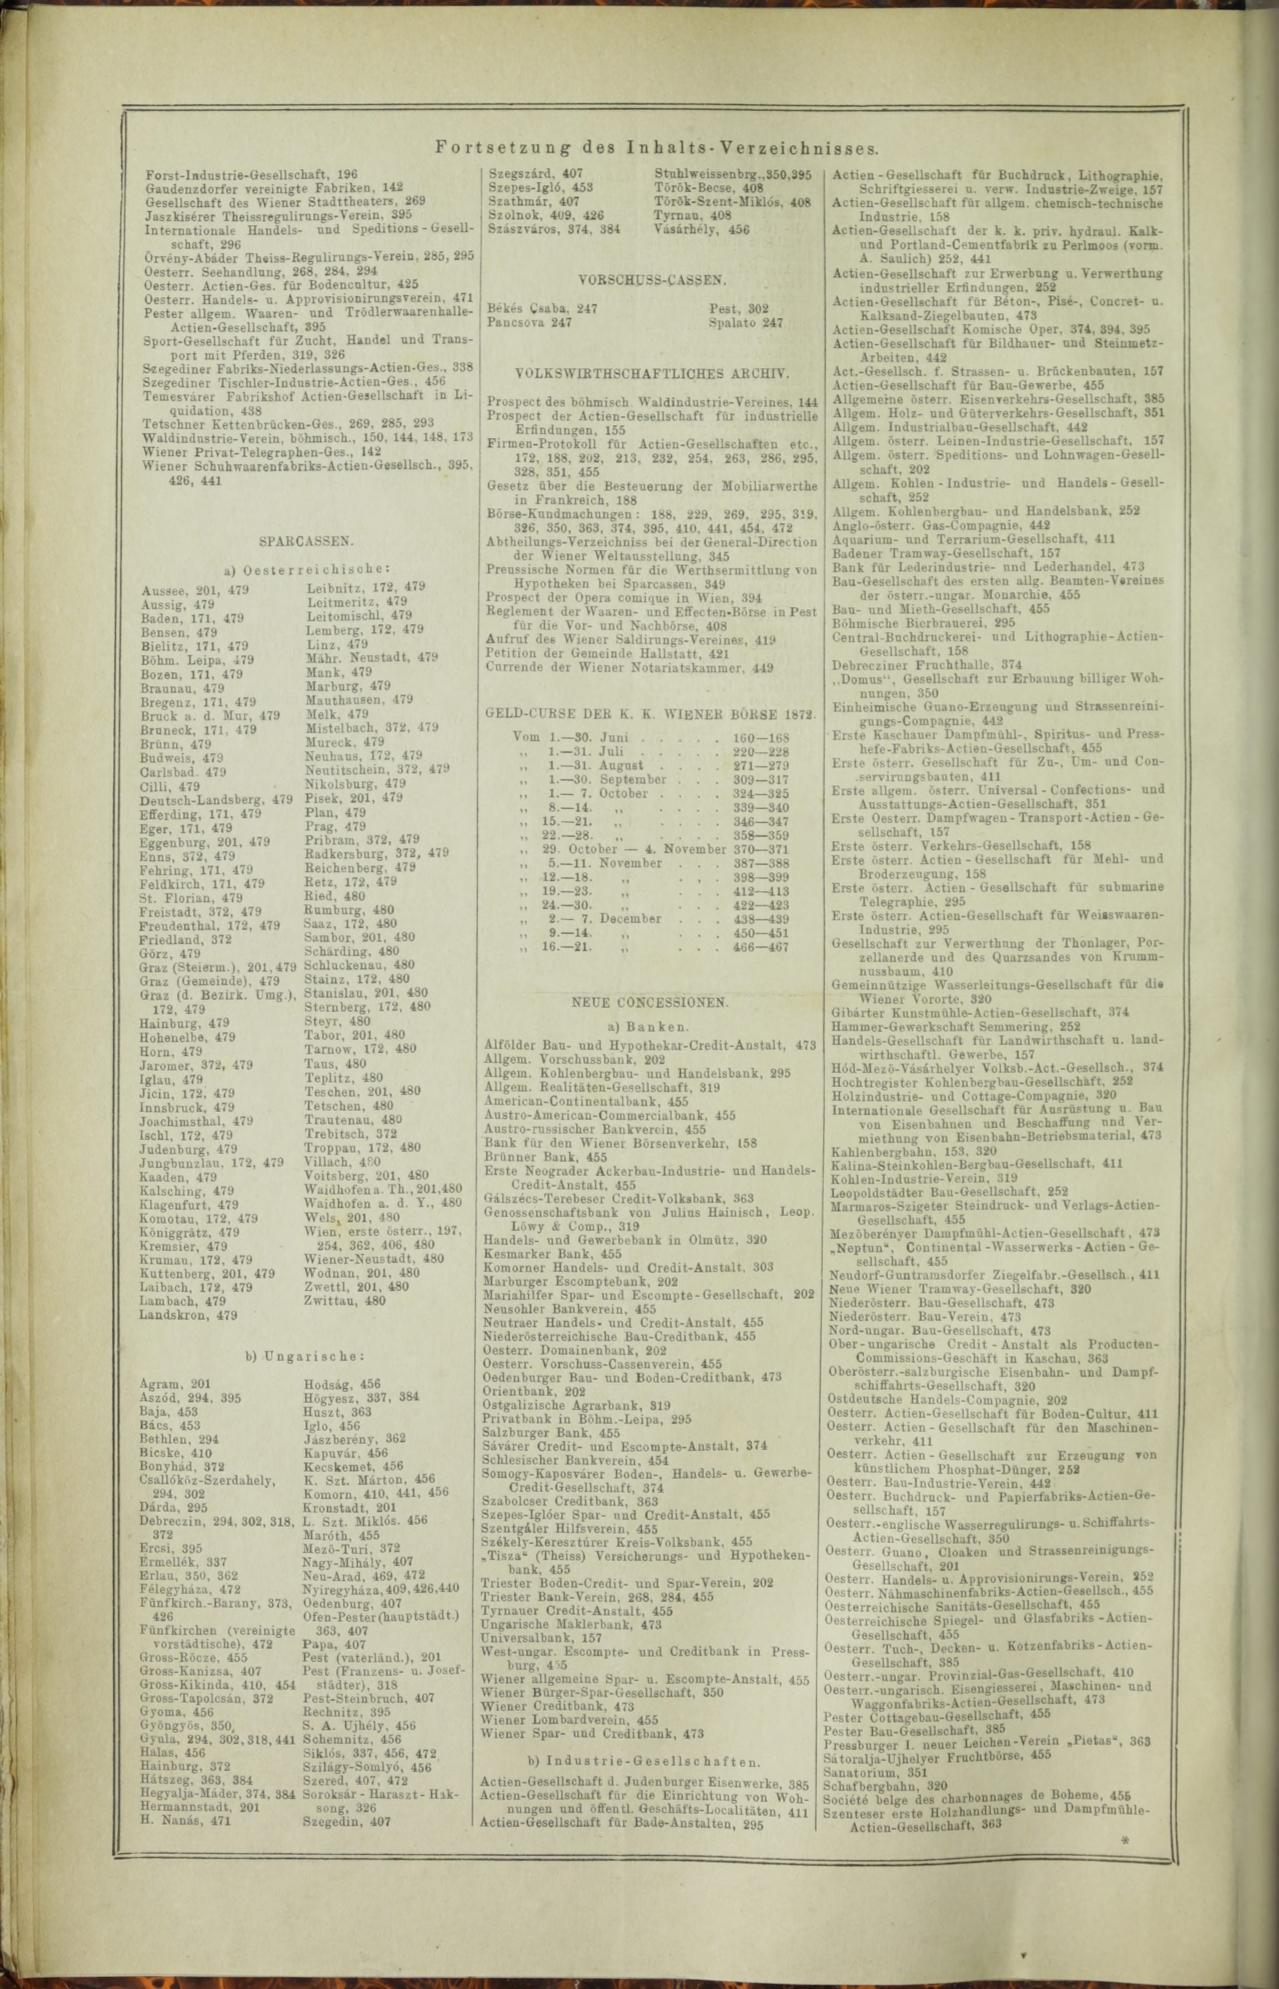 Der Tresor 06.11.1872 - Seite 17